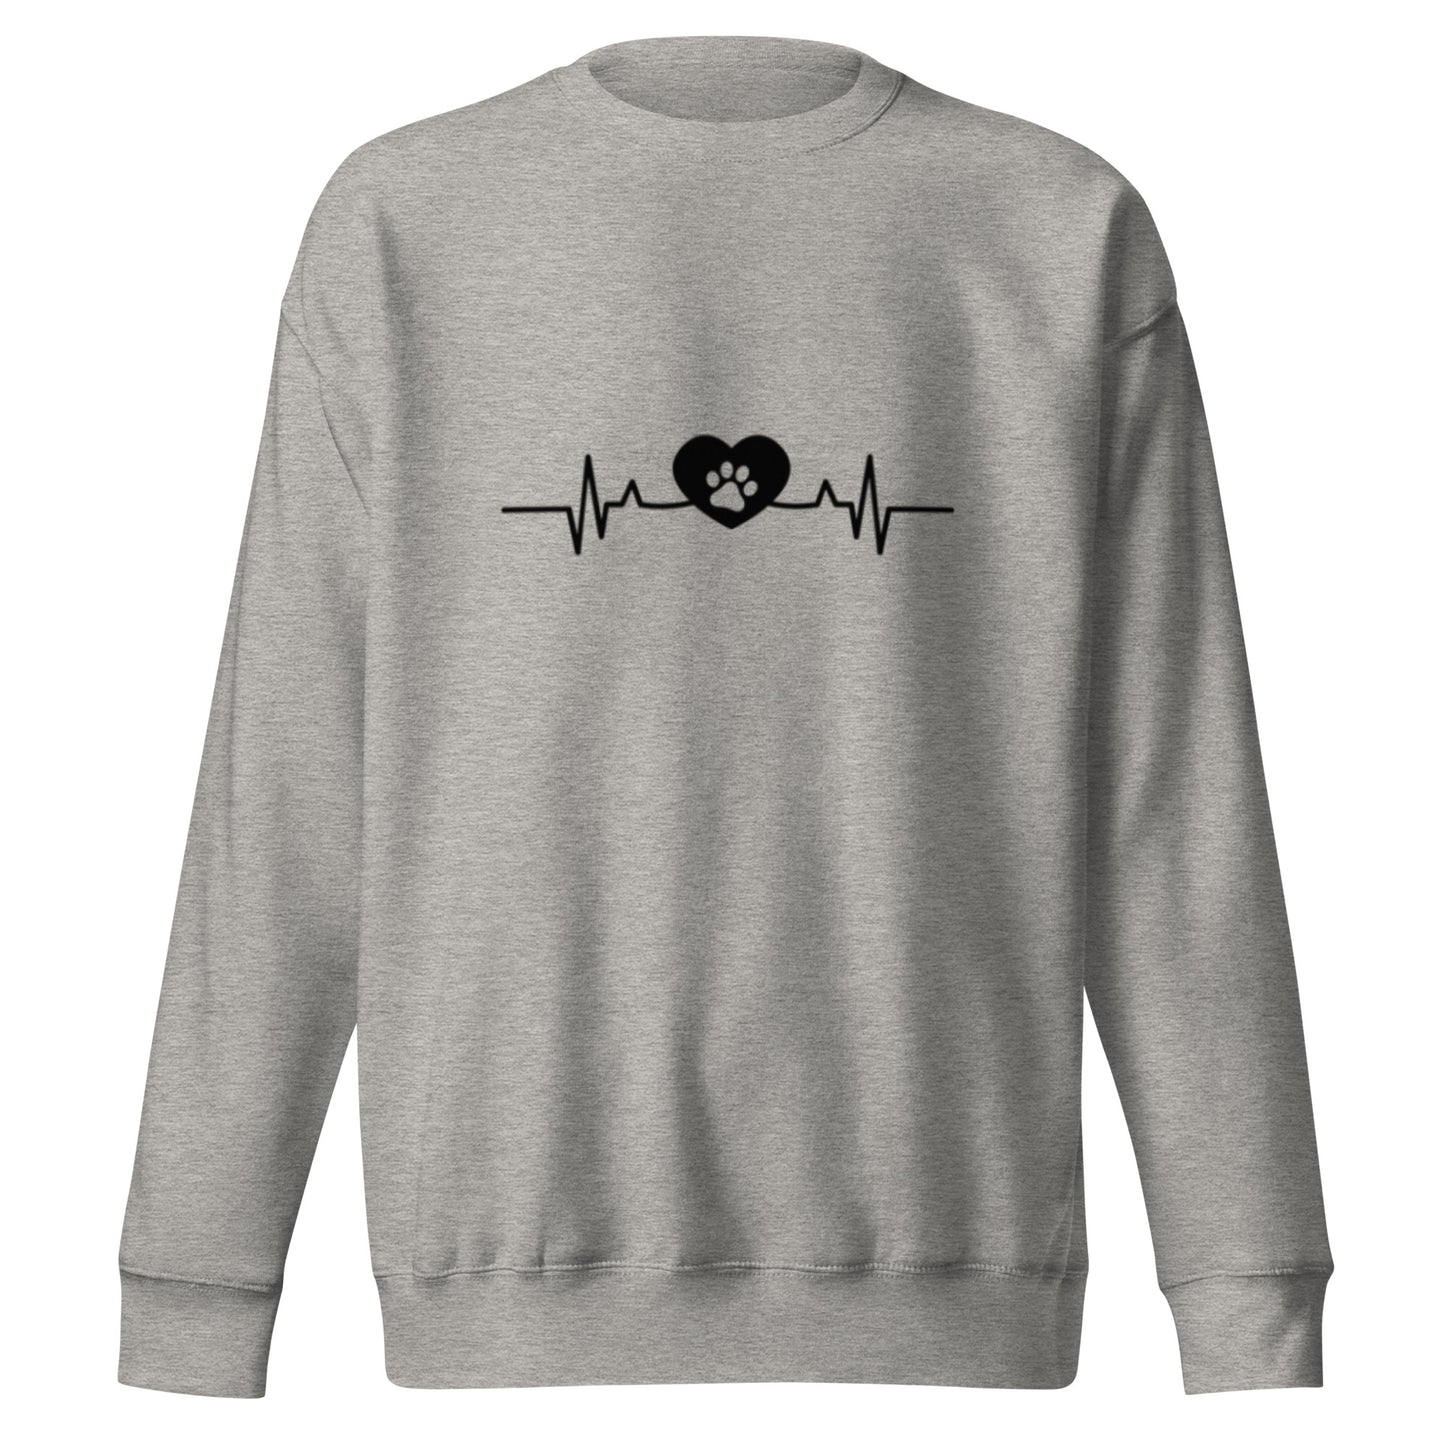 Heartbeat Paw - Sweatshirt